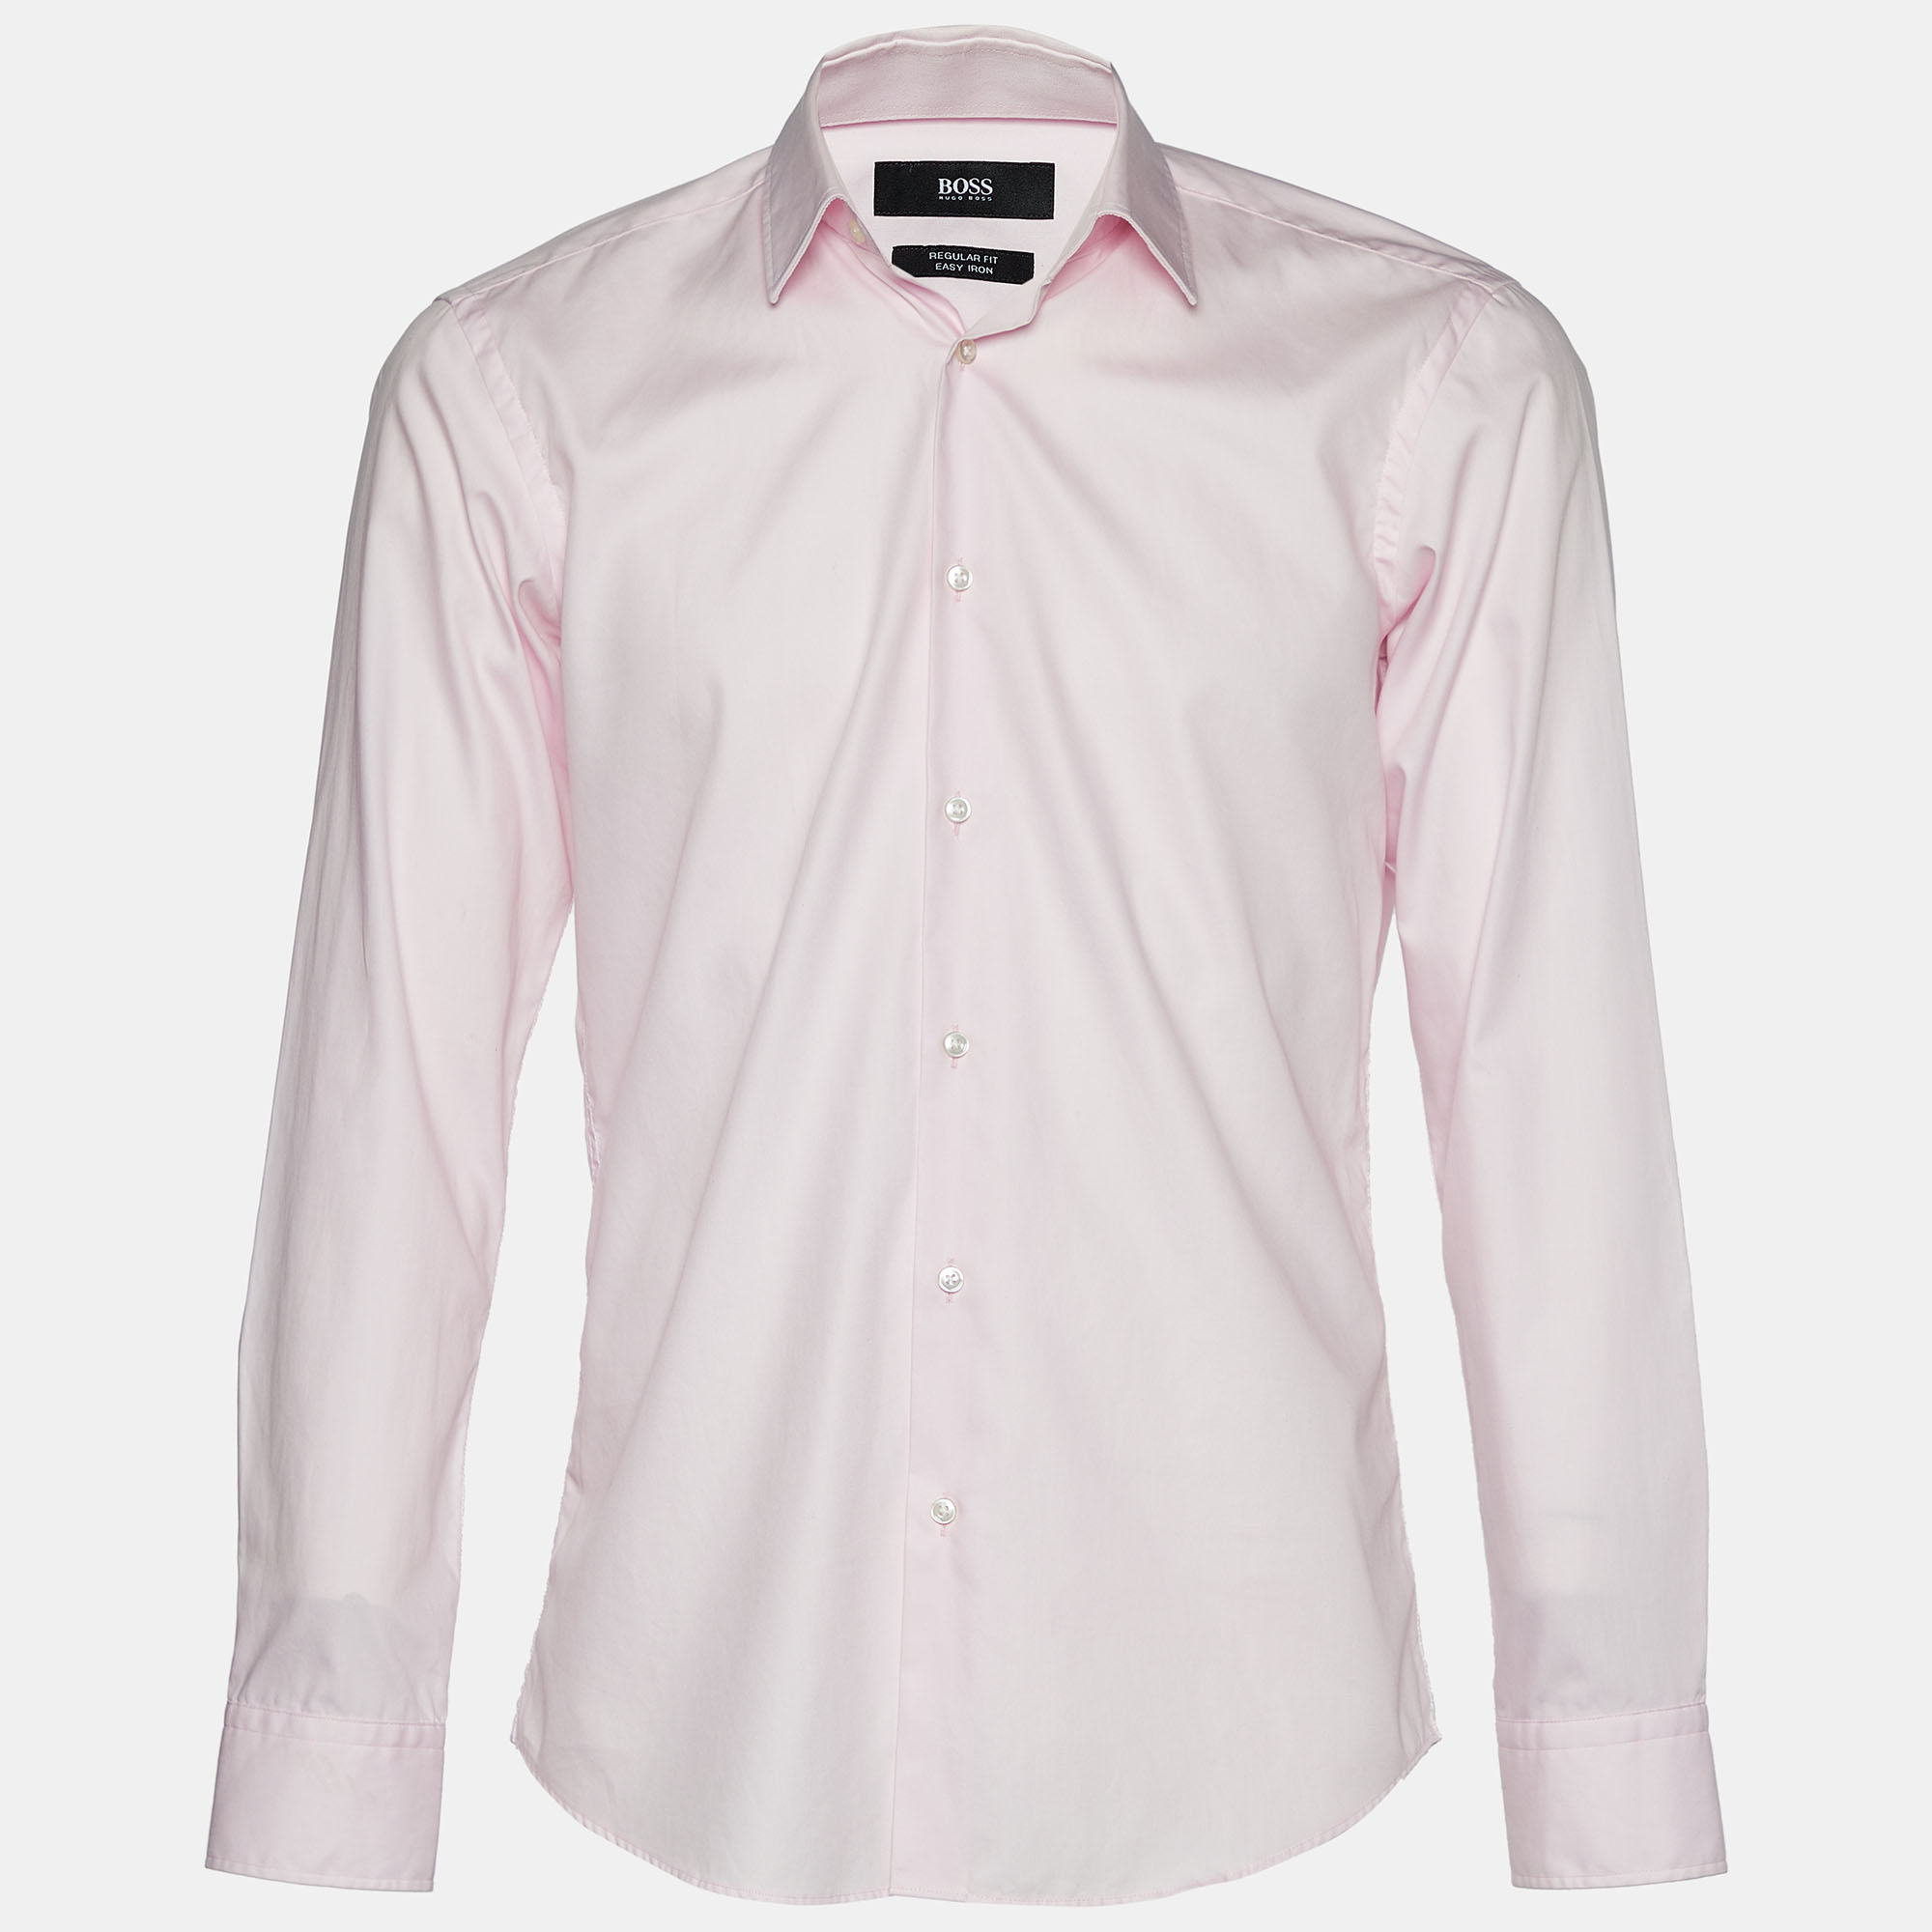 boss hugo boss pink cotton easy iron regular fit shirt m